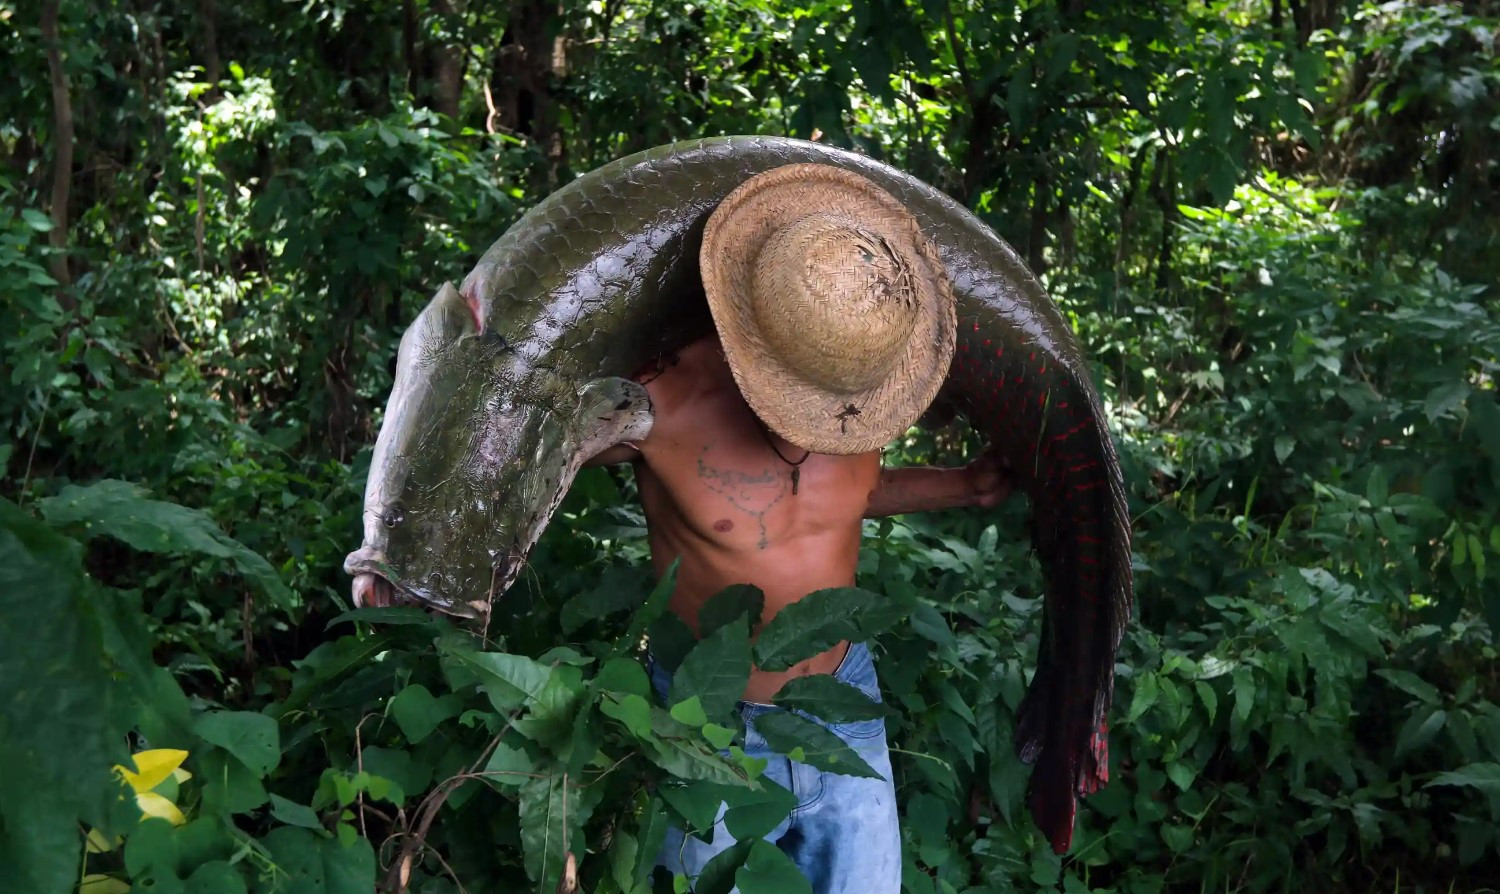 Một ngư dân mang theo một con cá pirarucu lớn - loài cá khổng lồ ở Amazon có thể bán với giá 1.000 USD mỗi con. Ảnh: AFP.